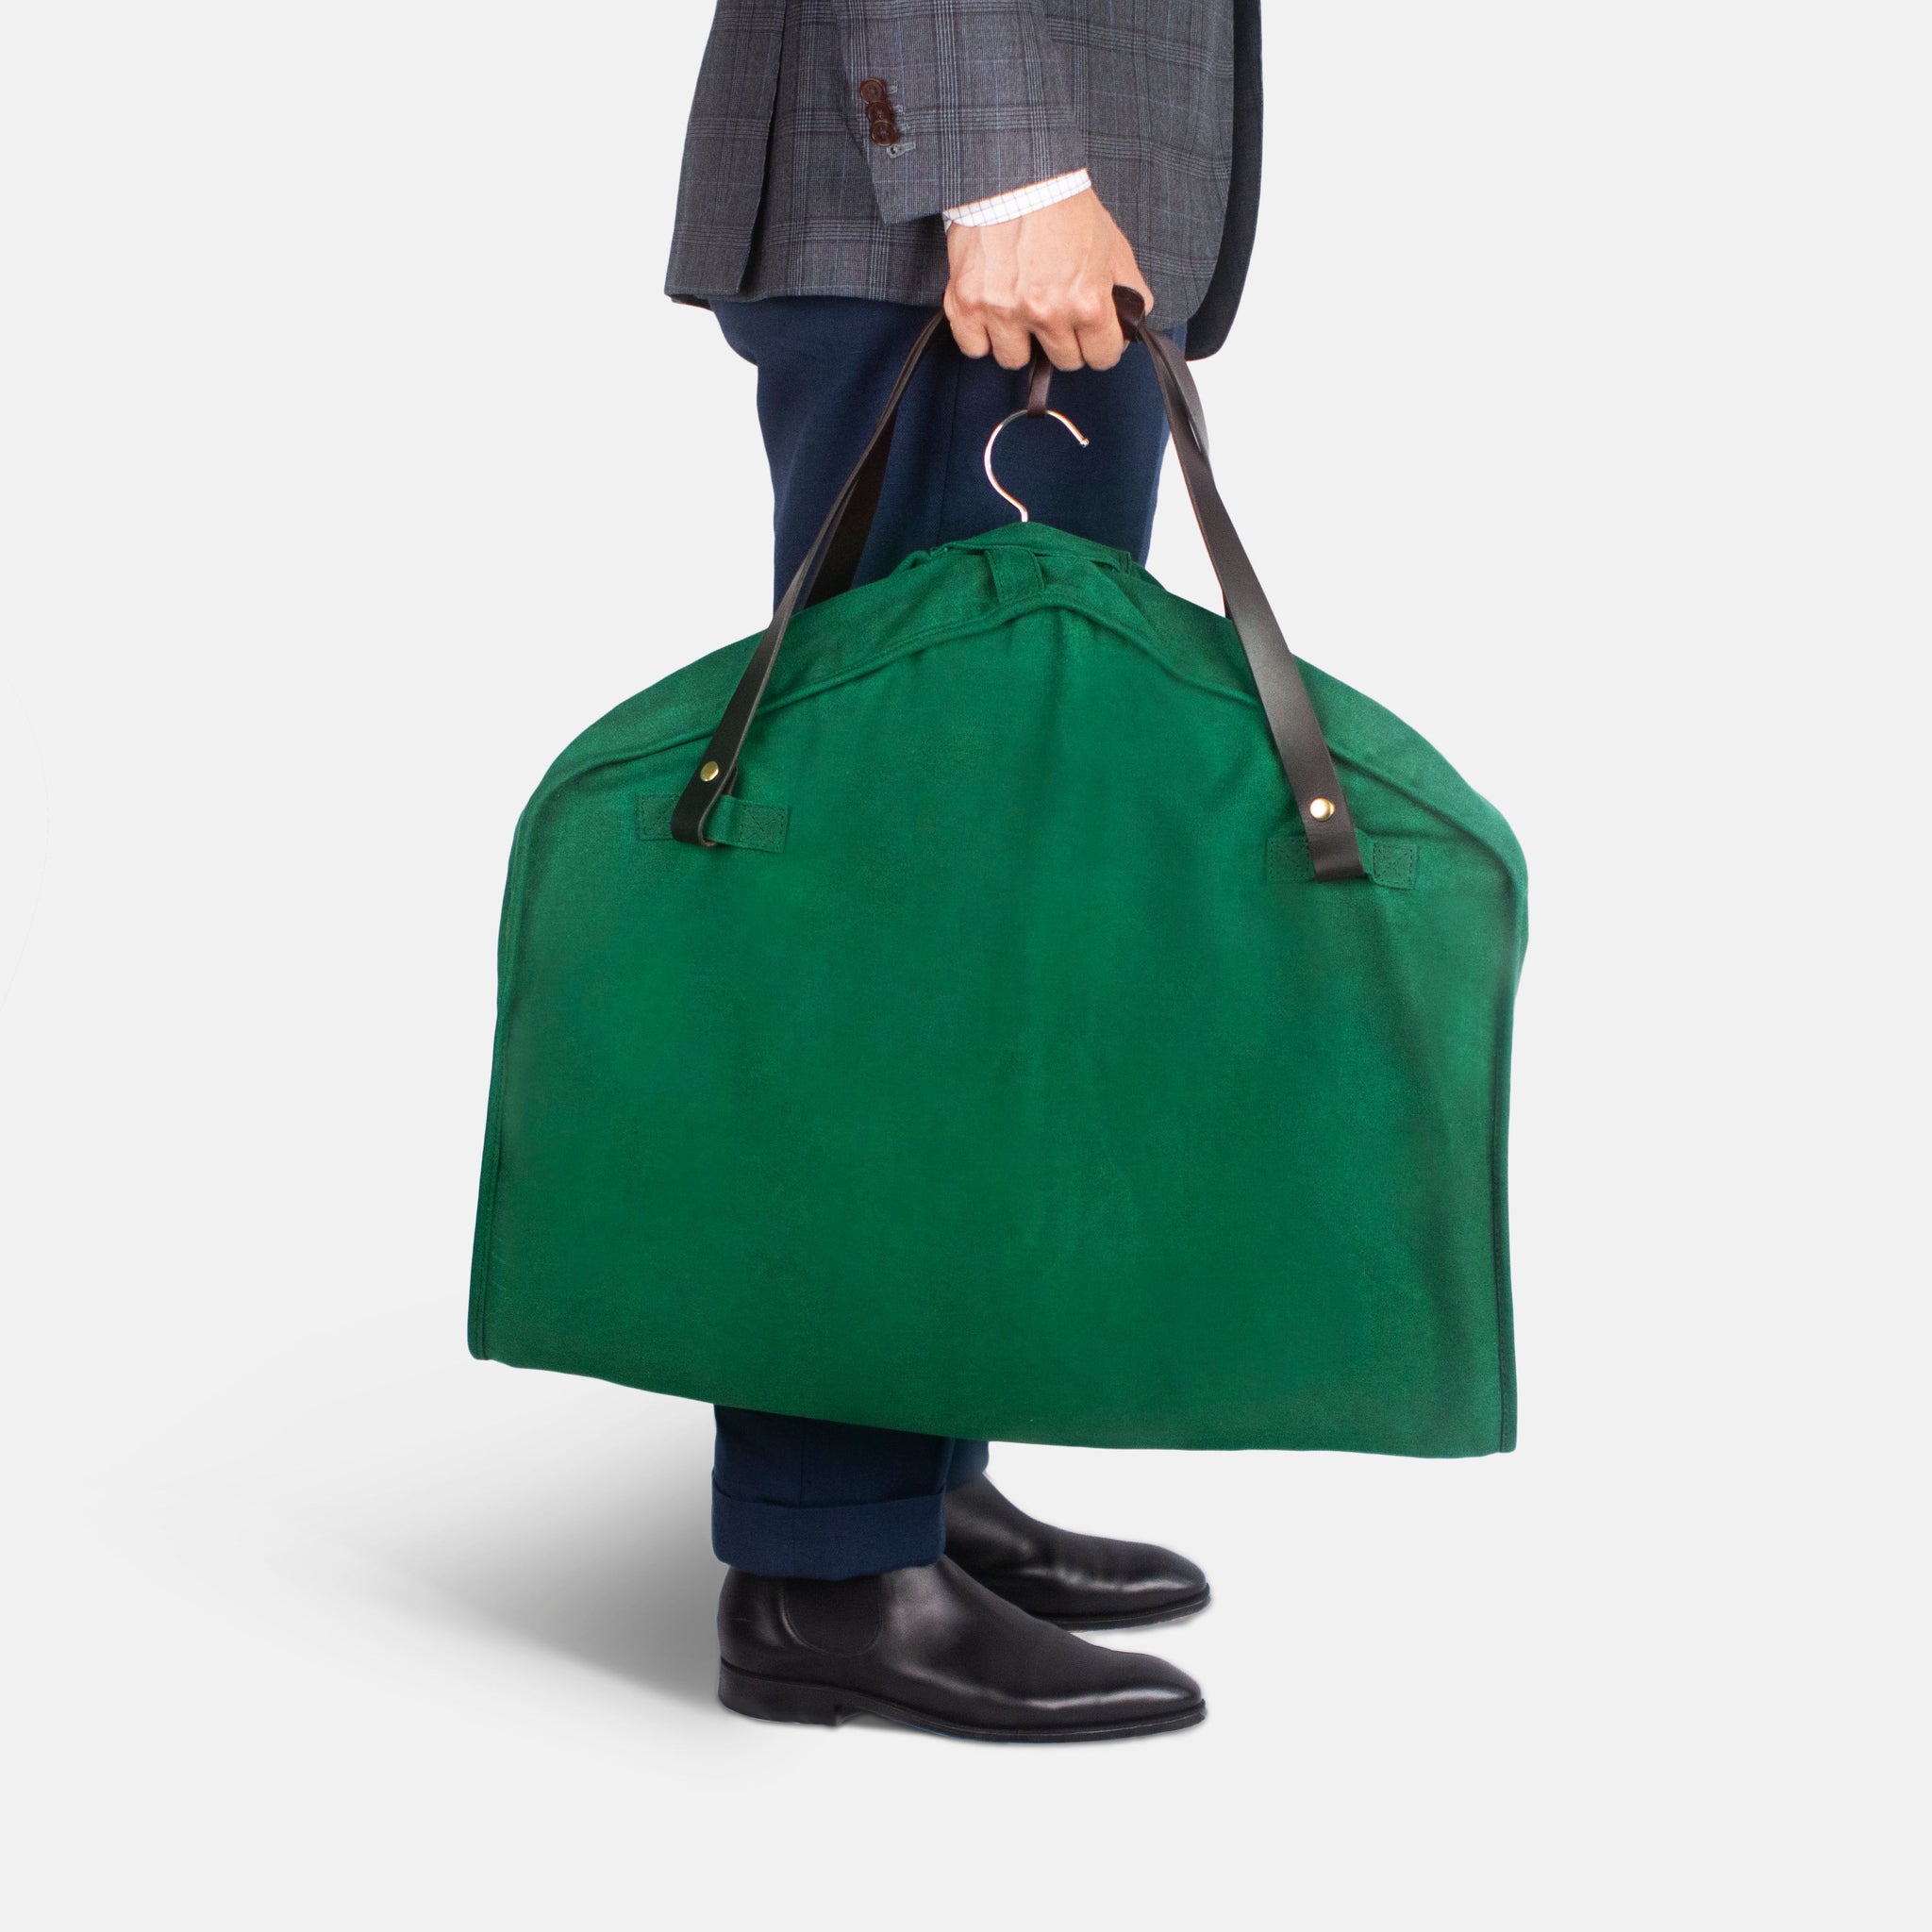 Hermès Toile Garment Bag Carrier Travel 872751 – Bagriculture